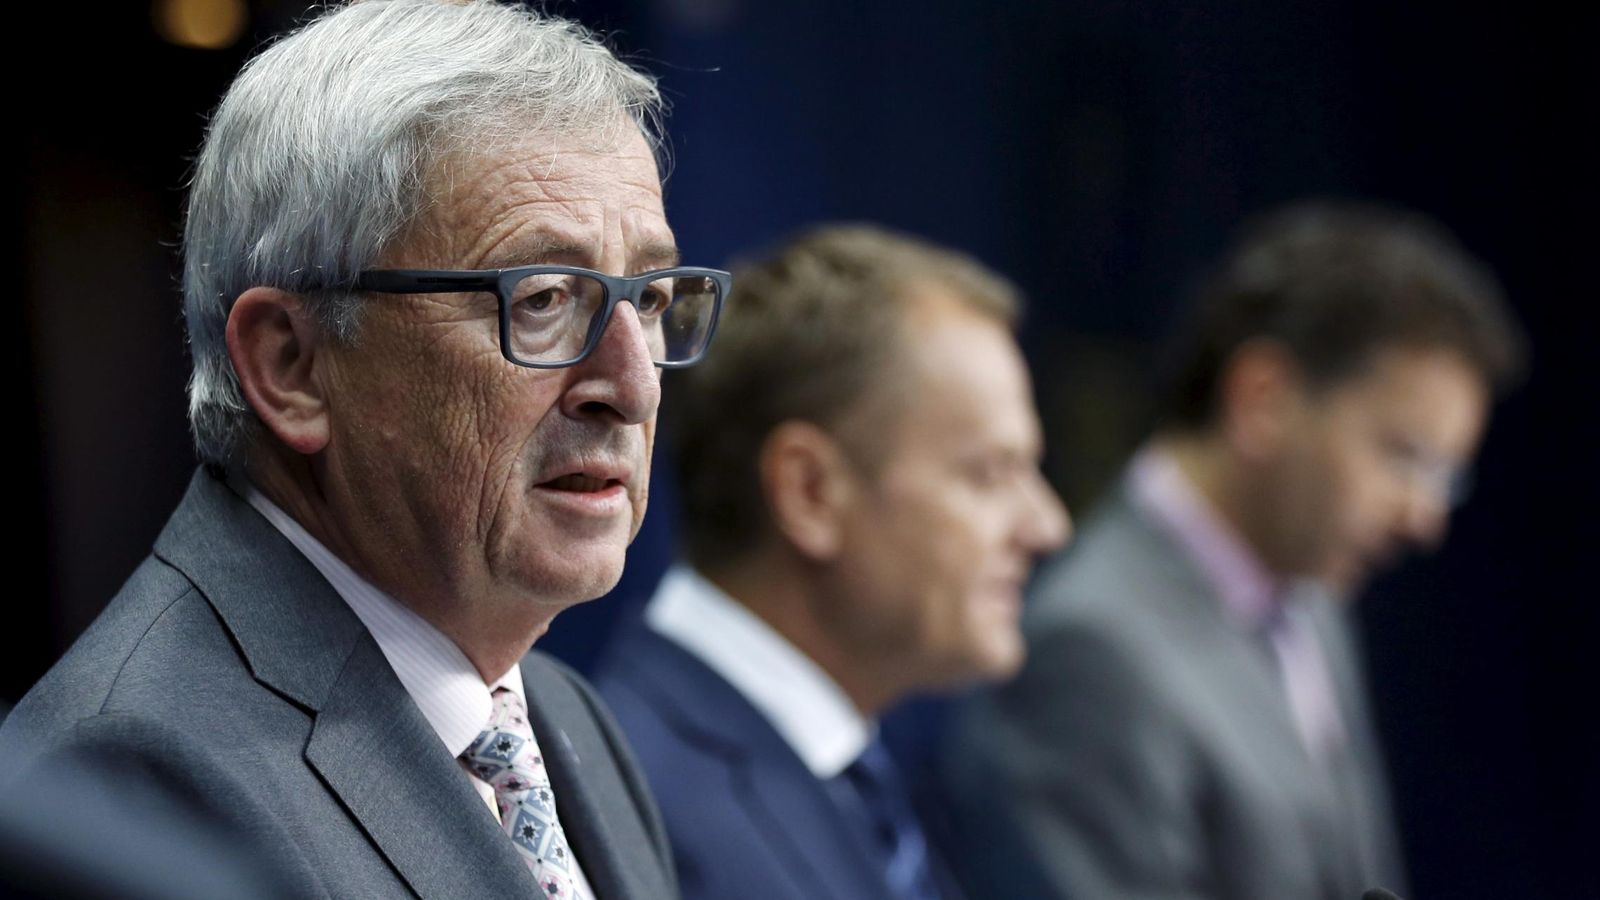 Foto: El presidente de la Comisión Europea, Jean-Claude Juncker, durante una rueda de prensa en Bruselas (Reuters).